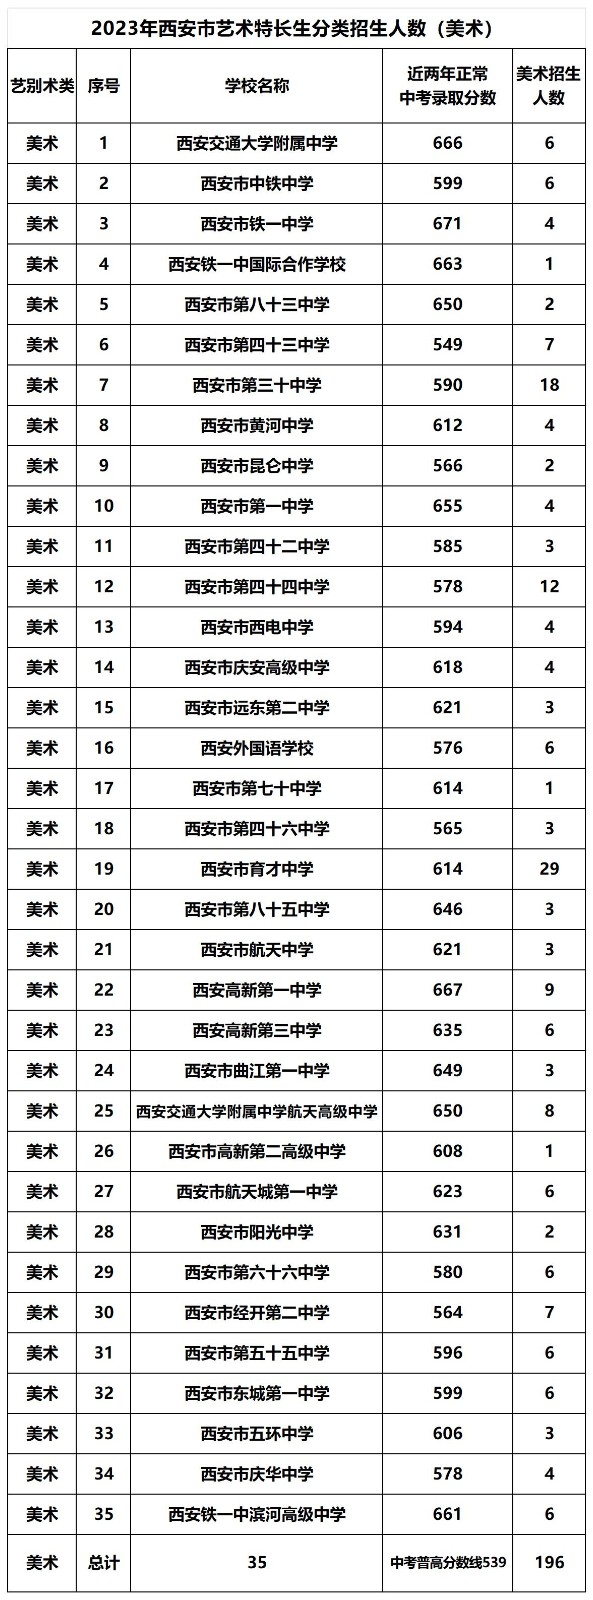 2020考研西宁考区报考人数为9679人 较去年添加添加850人